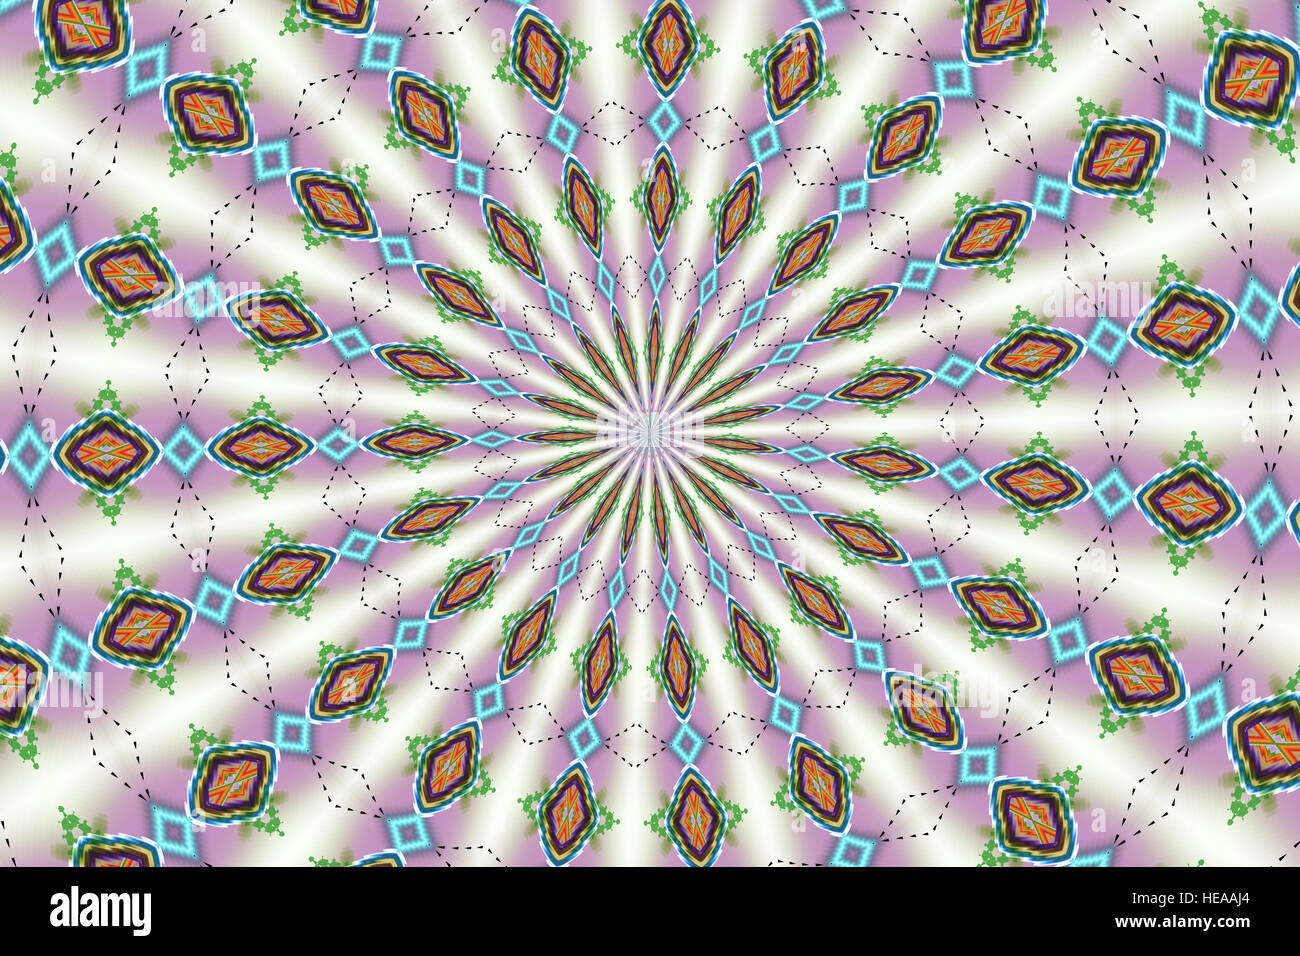 Digital Art - Kaleidoscope - Illustration Stock Photo